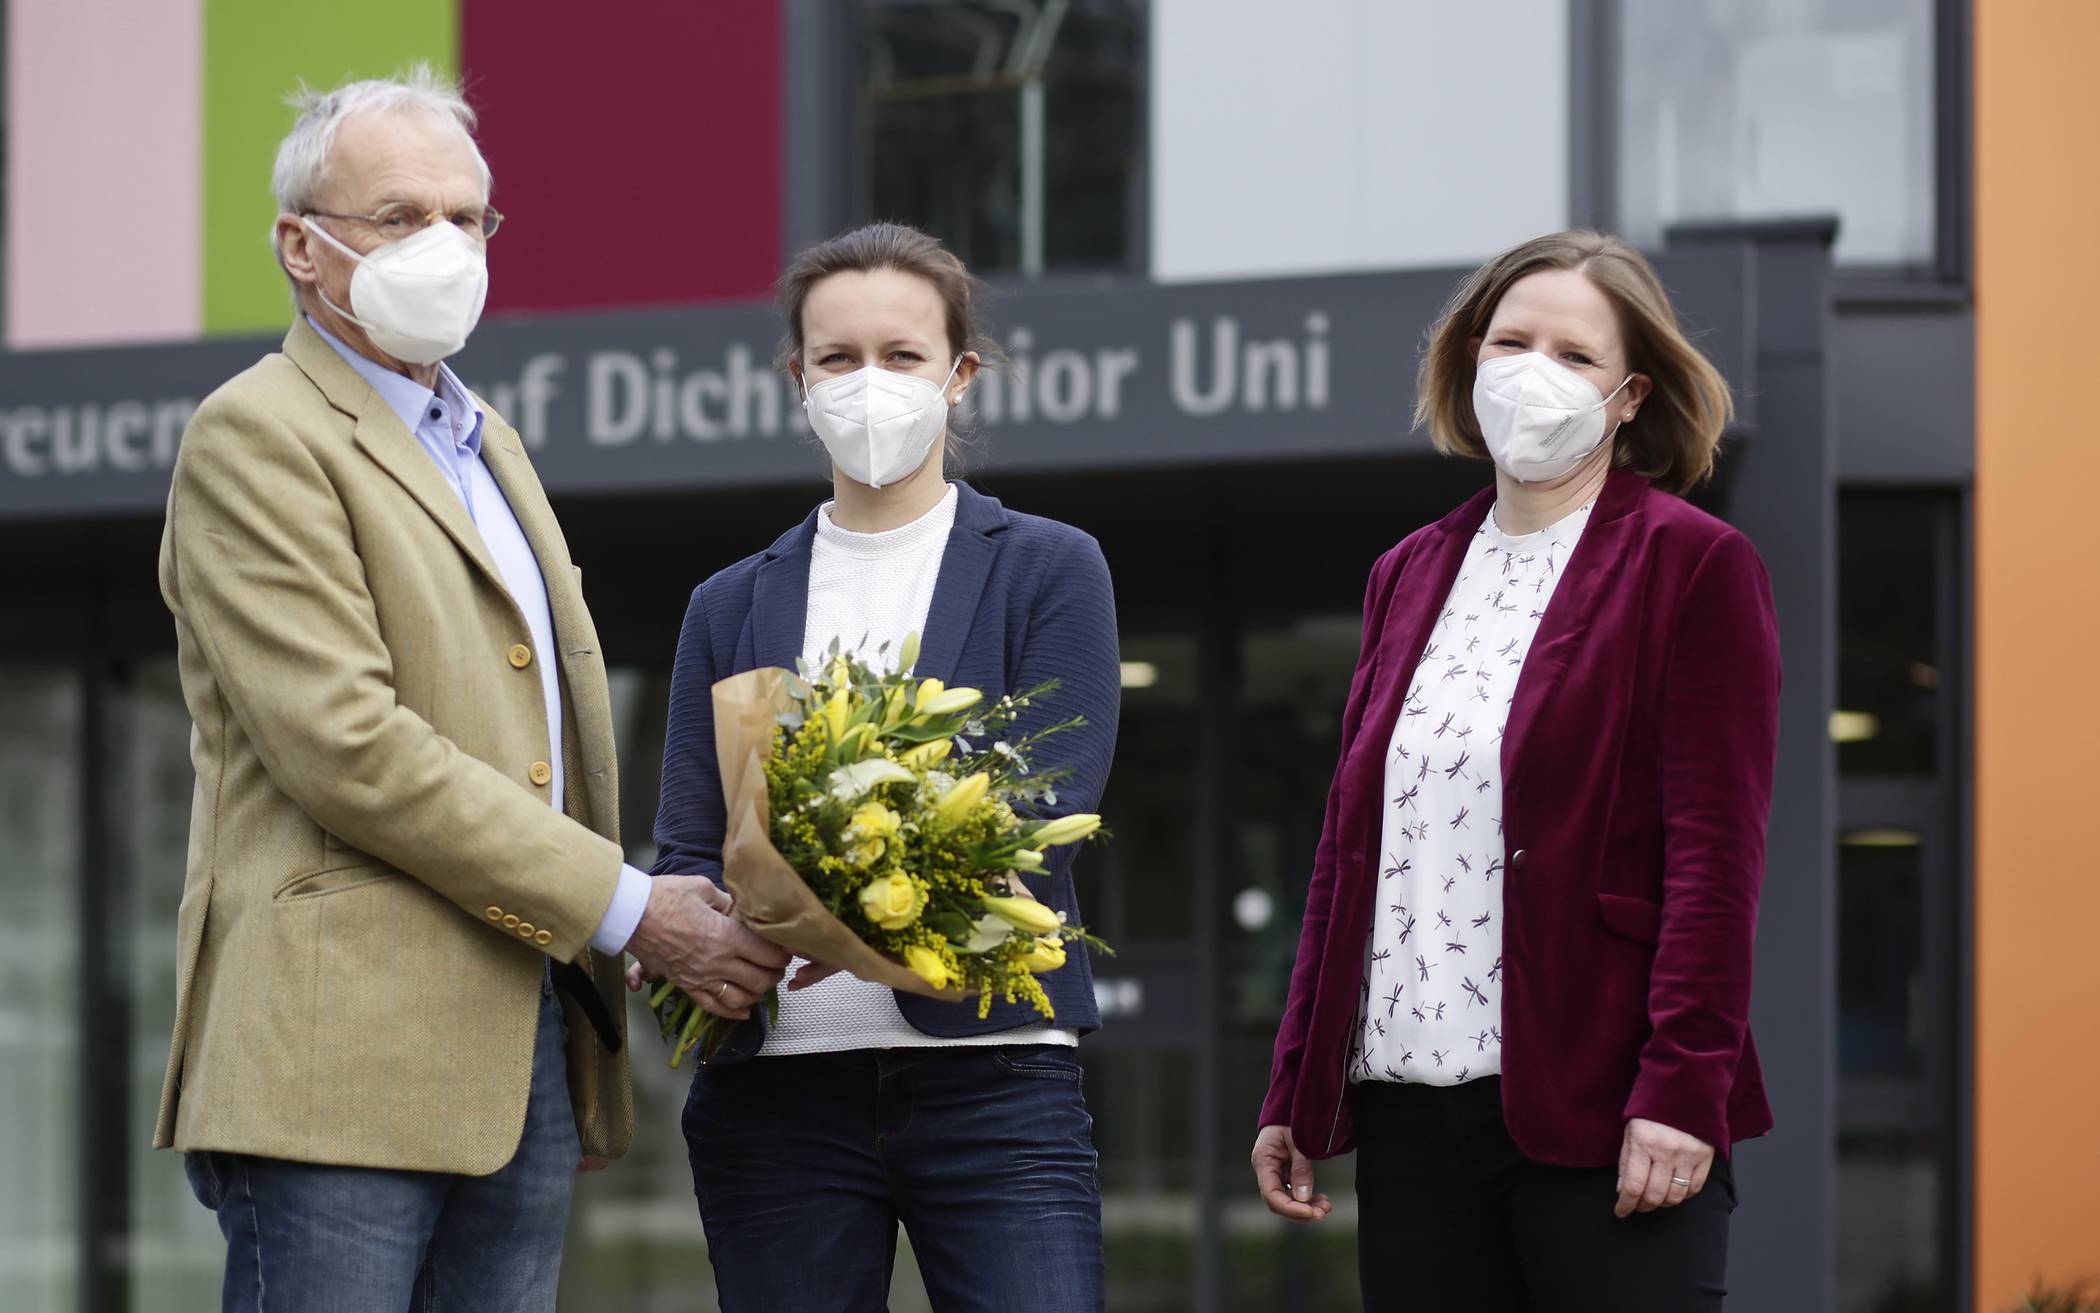  Blumen für Dr. Annika Spathmann (Mitte), die frisch ernannte Geschäftsführerin der Junior Uni, von Prof. Dr. h.c. Ernst-Andreas Ziegler und Dr. Ariane Staab. 